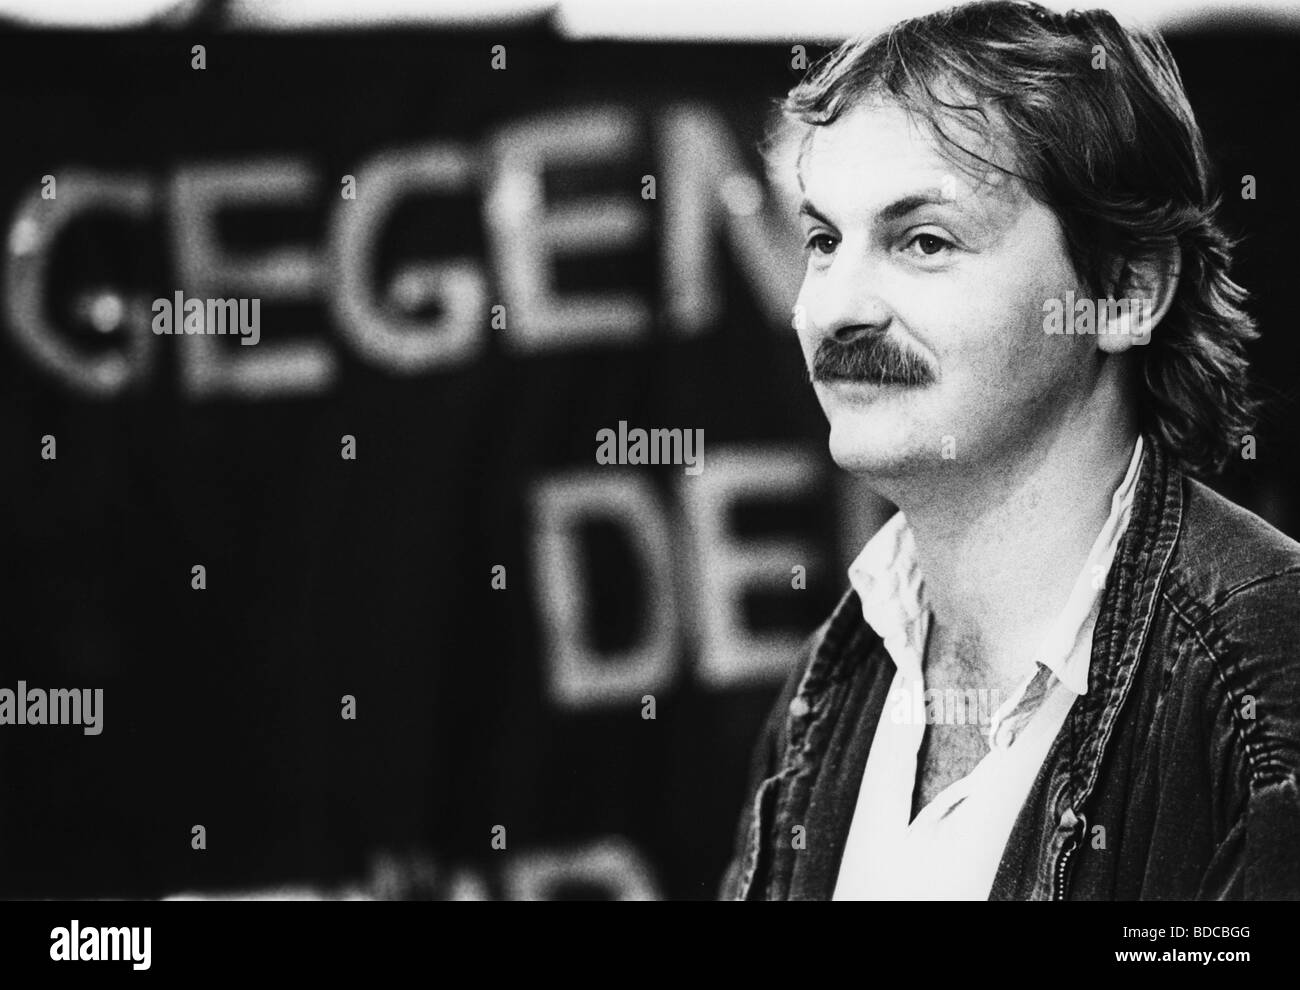 Kleinert, Hubert, politicien allemand (les Verts), portrait, convention du parti national des Verts, Hagen, Allemagne, 22. - 23.6.1985, , Banque D'Images